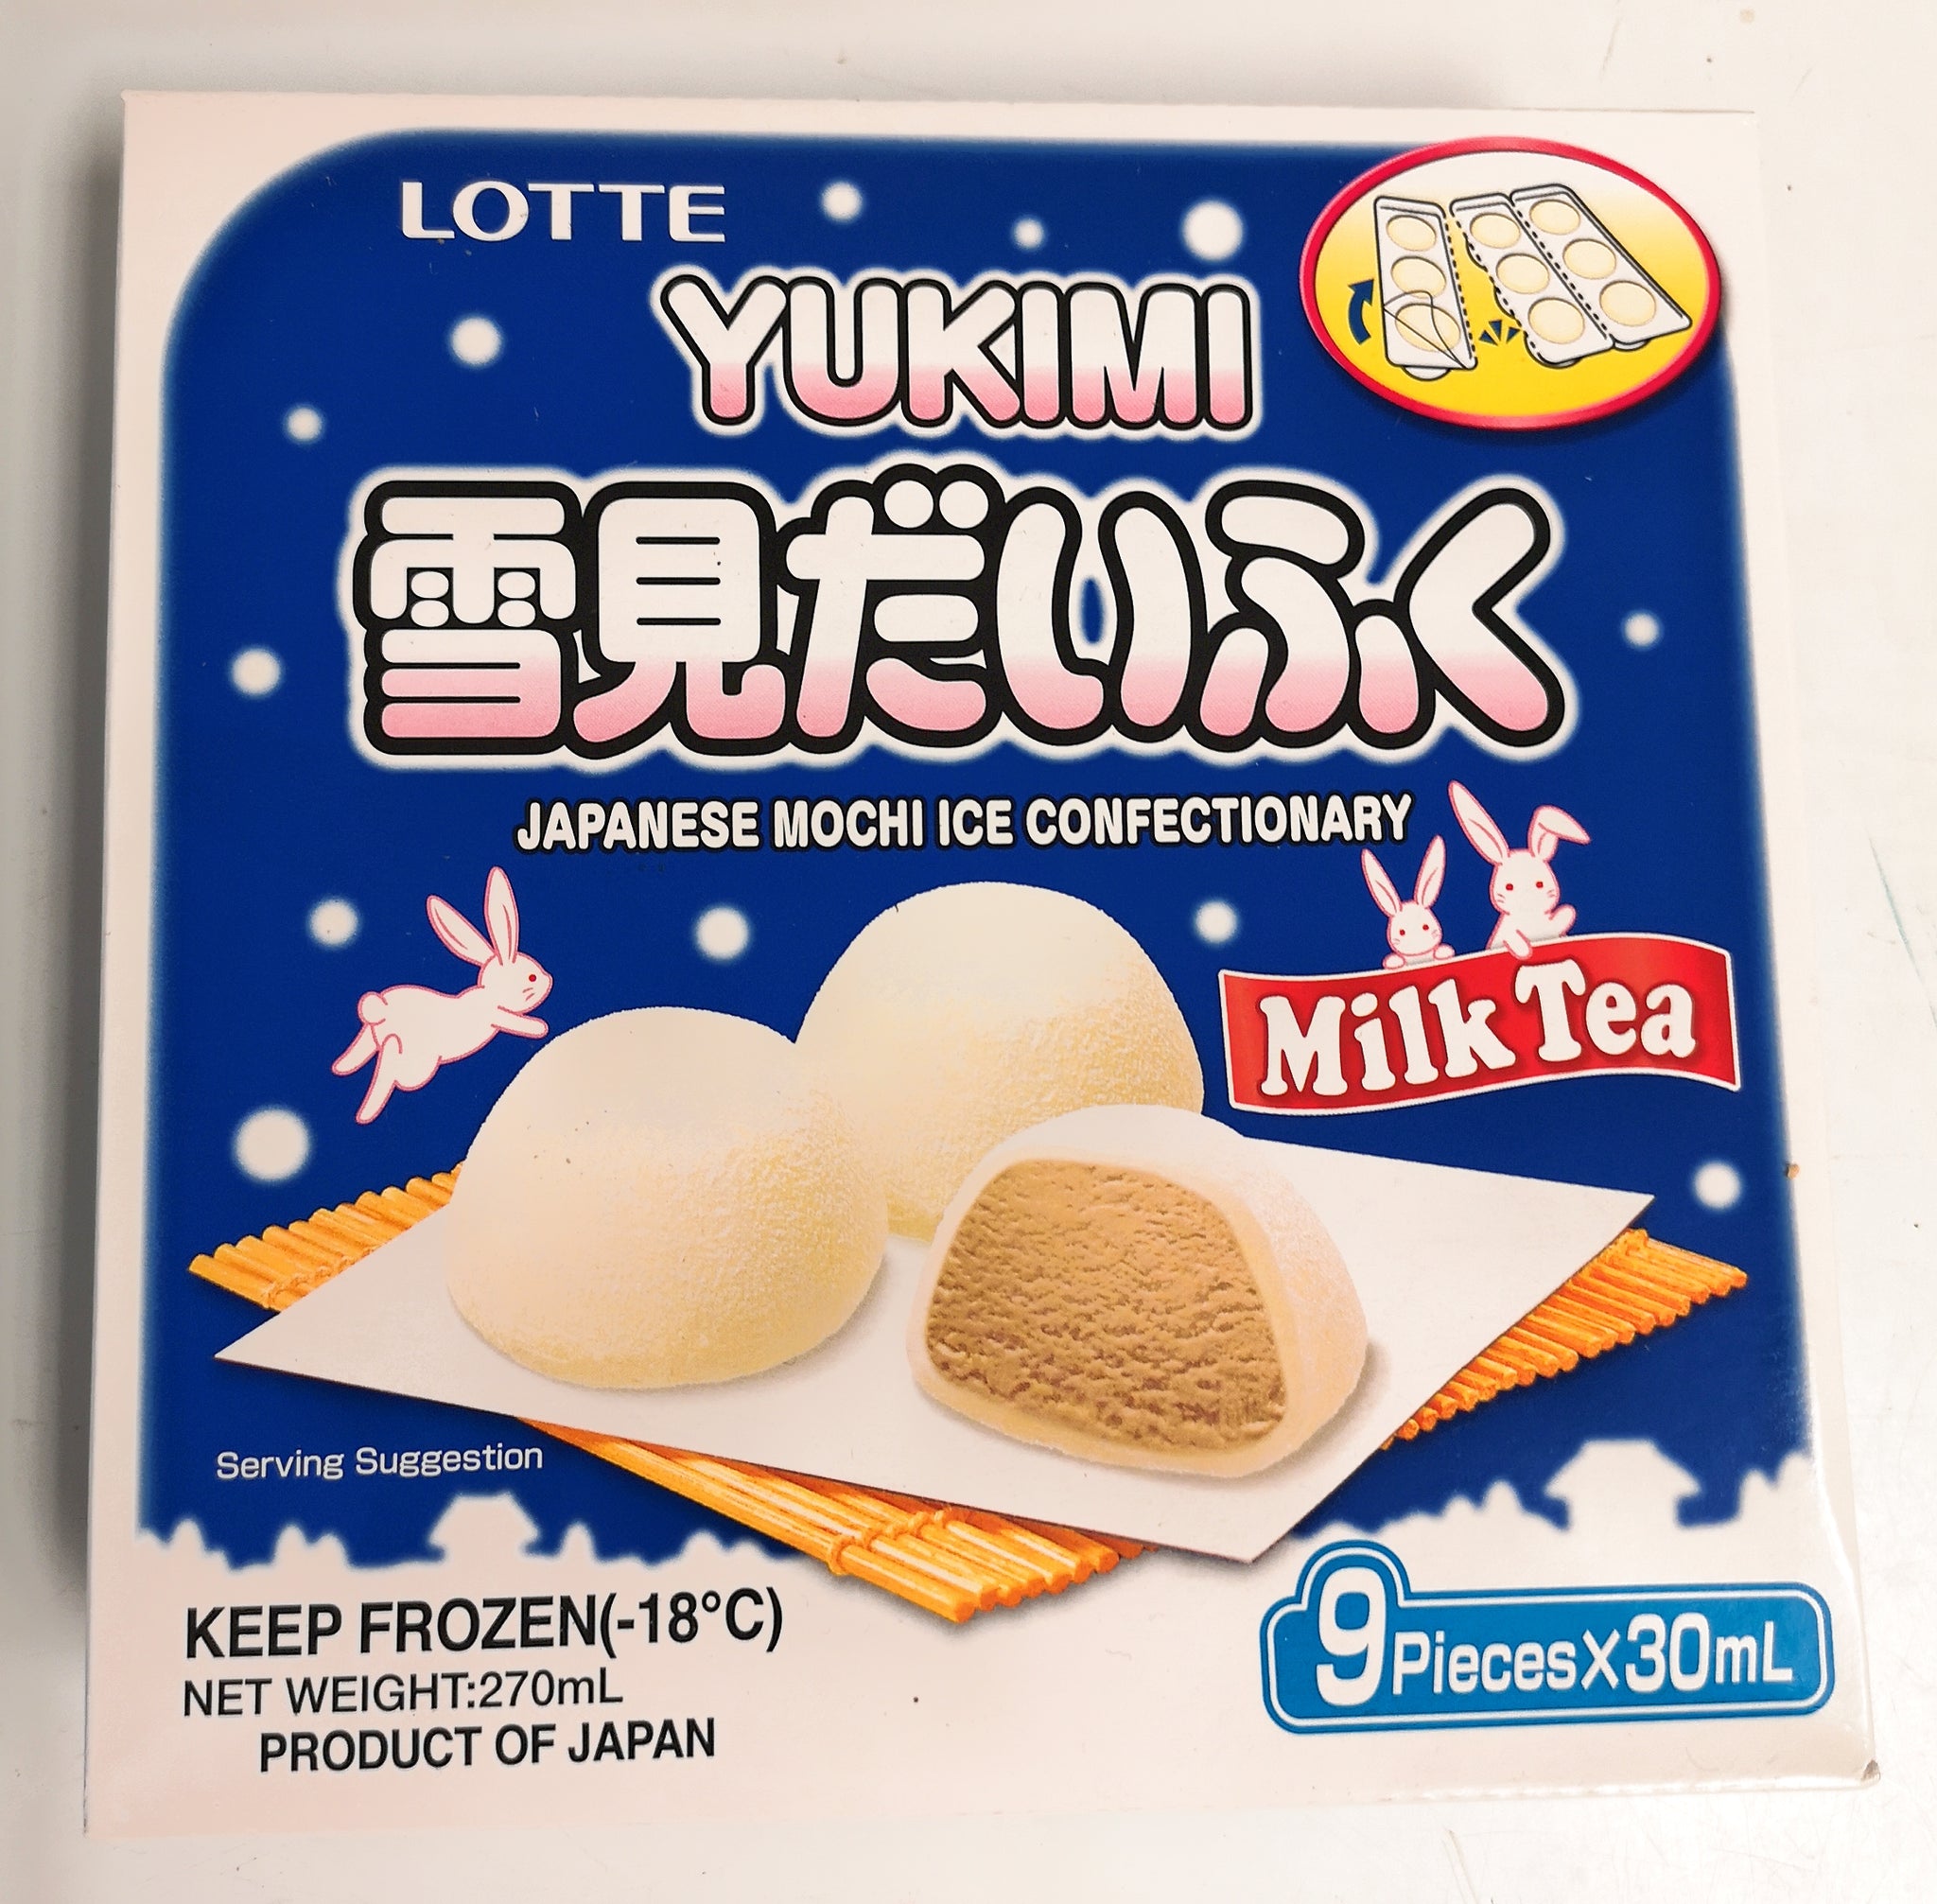 雪见 Yukimi Milk Tea 奶茶味 有税